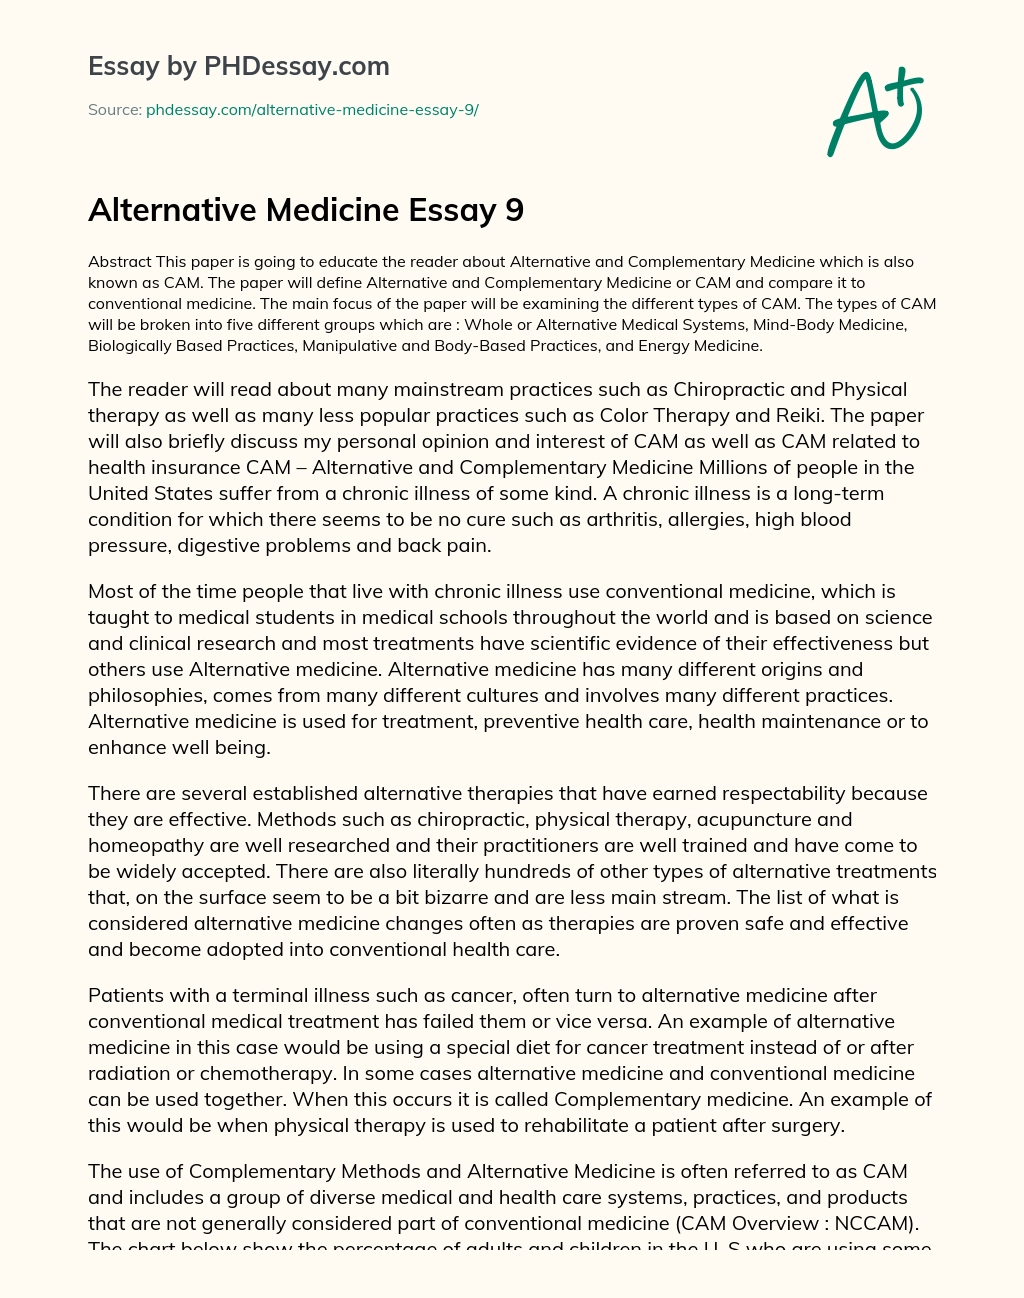 Alternative Medicine Essay 9 essay